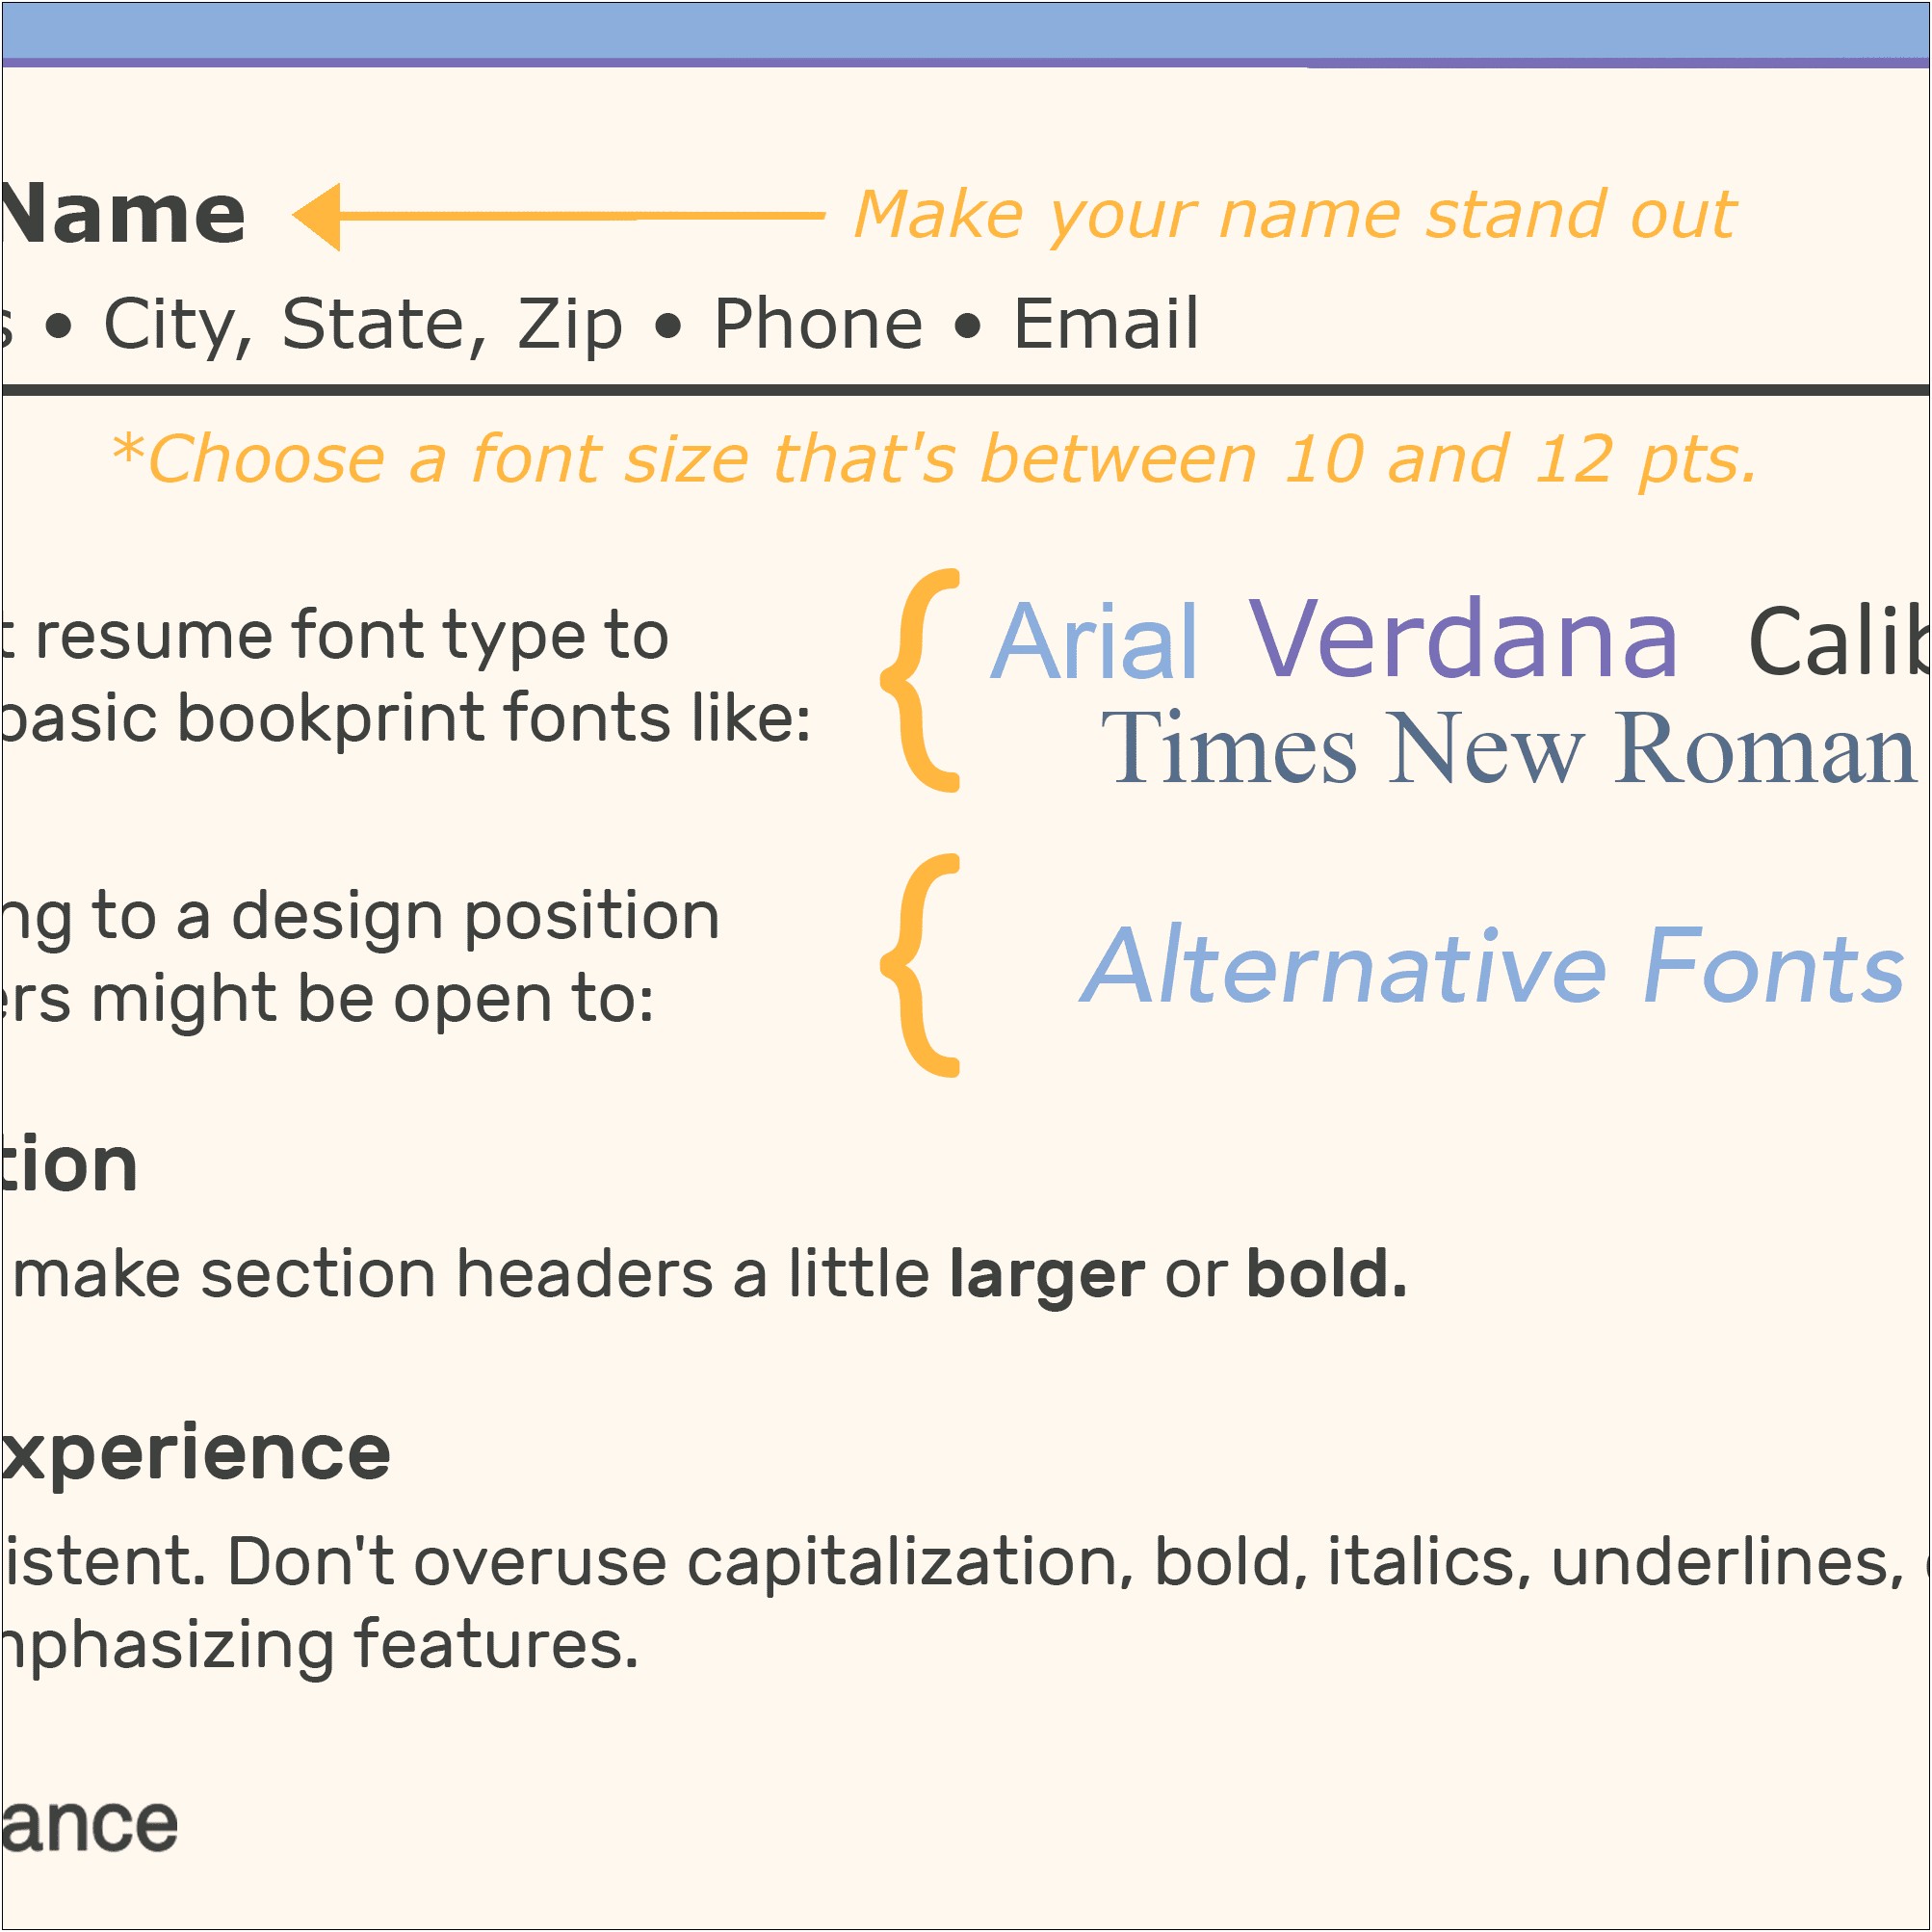 Should Cover Letter Resume Font Be Same